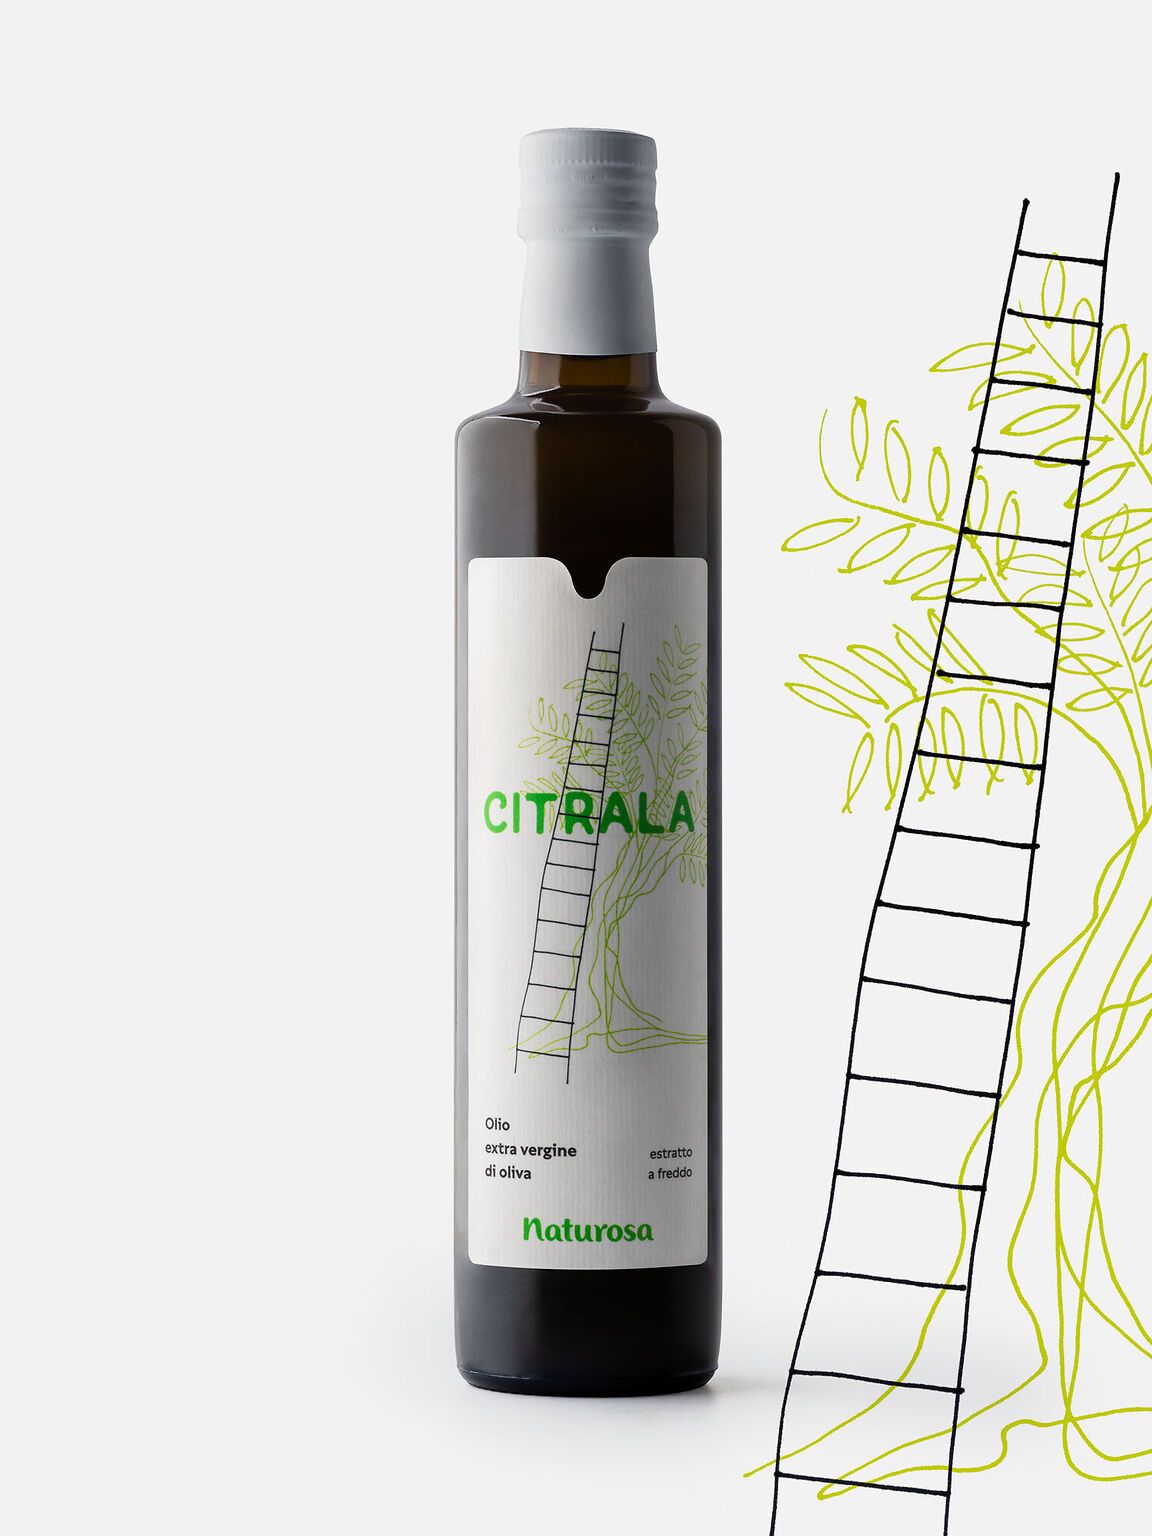 Progettazione etichetta Olio Citrala marchio Naturosa